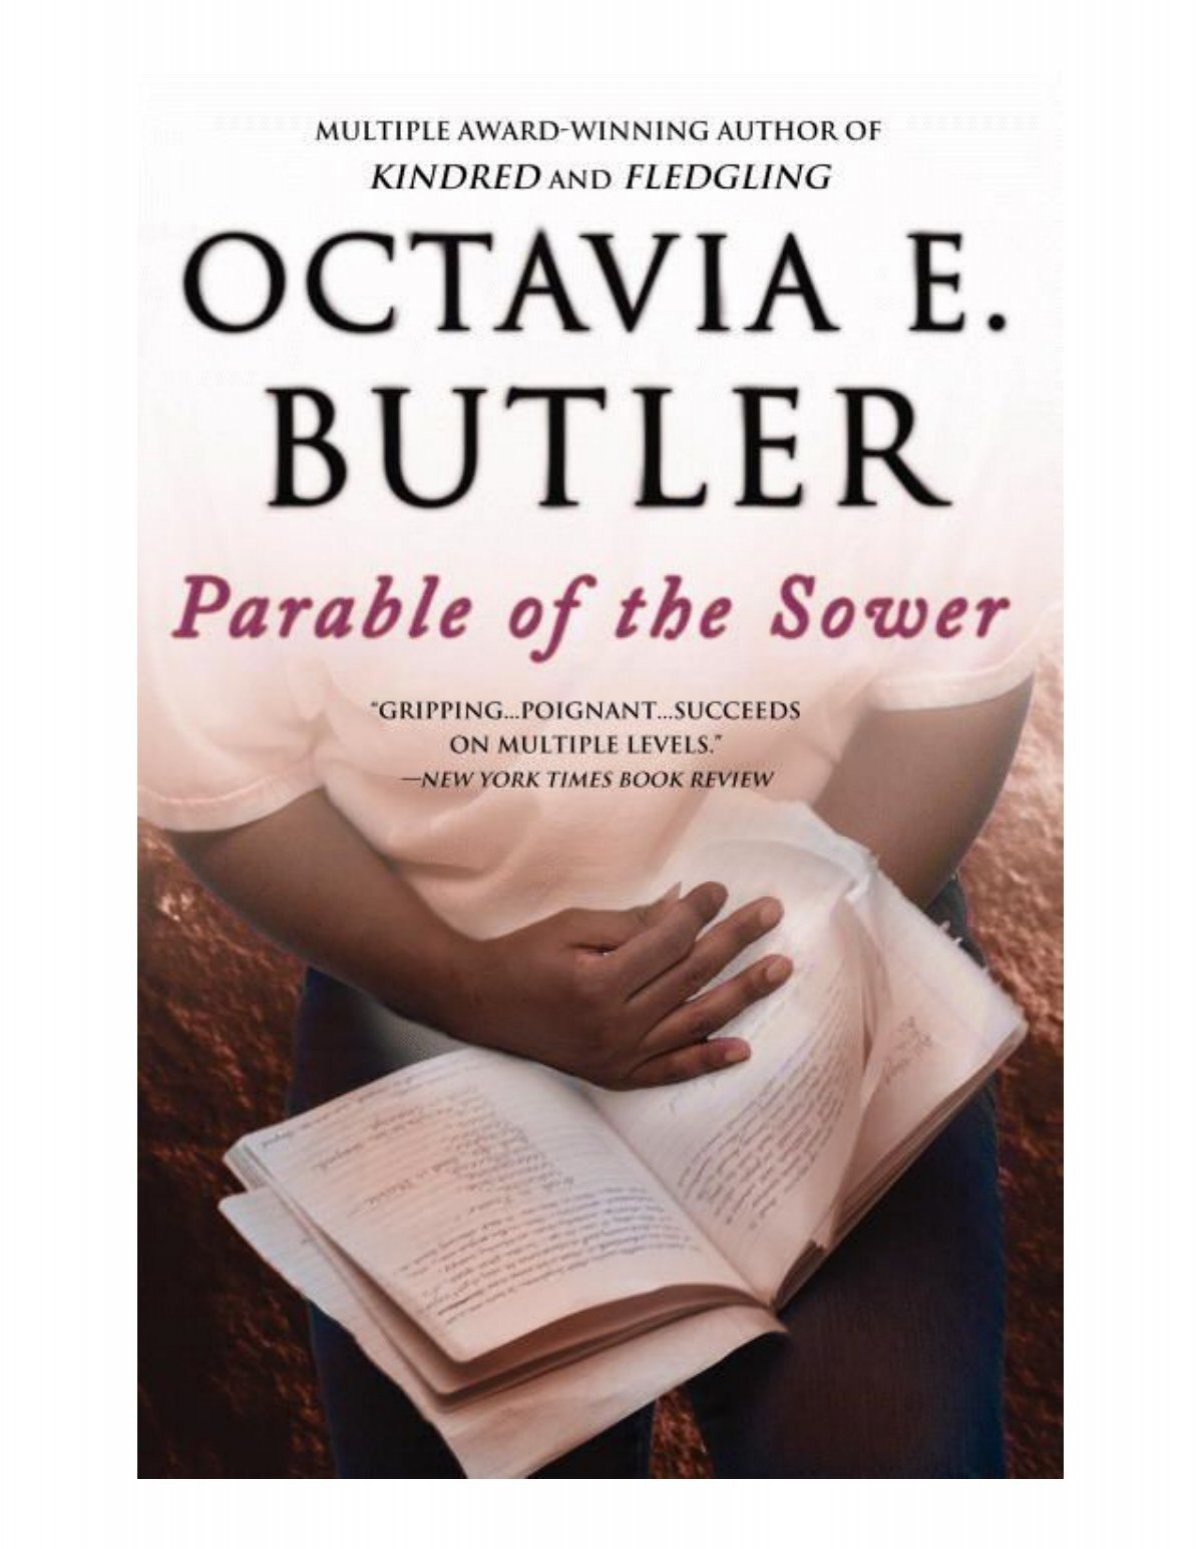 Octavia e butler pdf